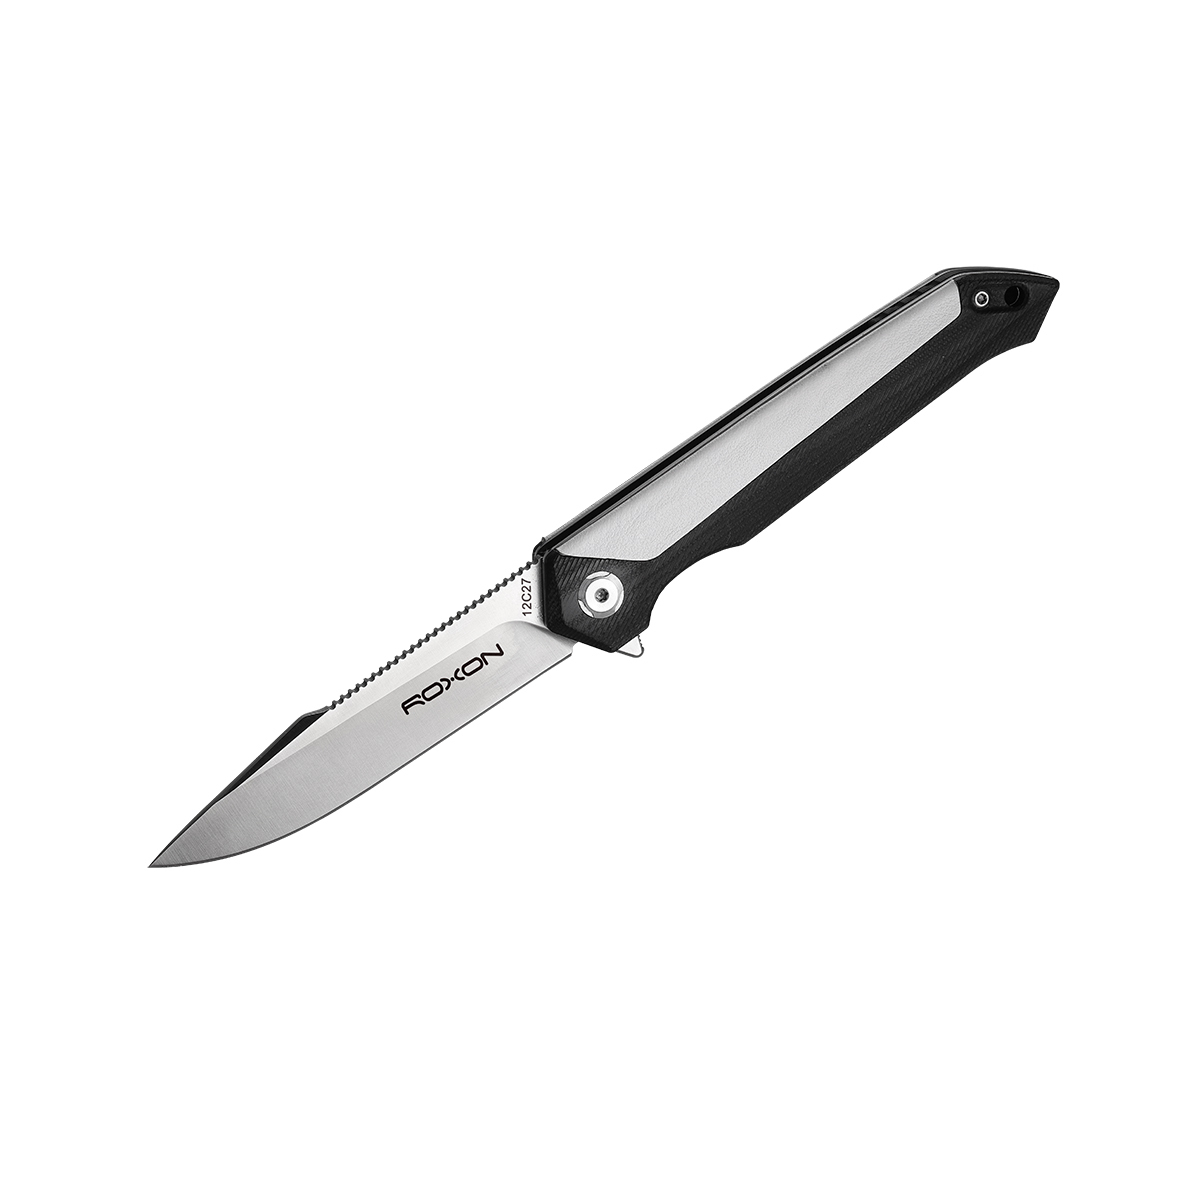 Складной нож Roxon K3, сталь sandvik 12C27, рукоять G10/кожа, белый